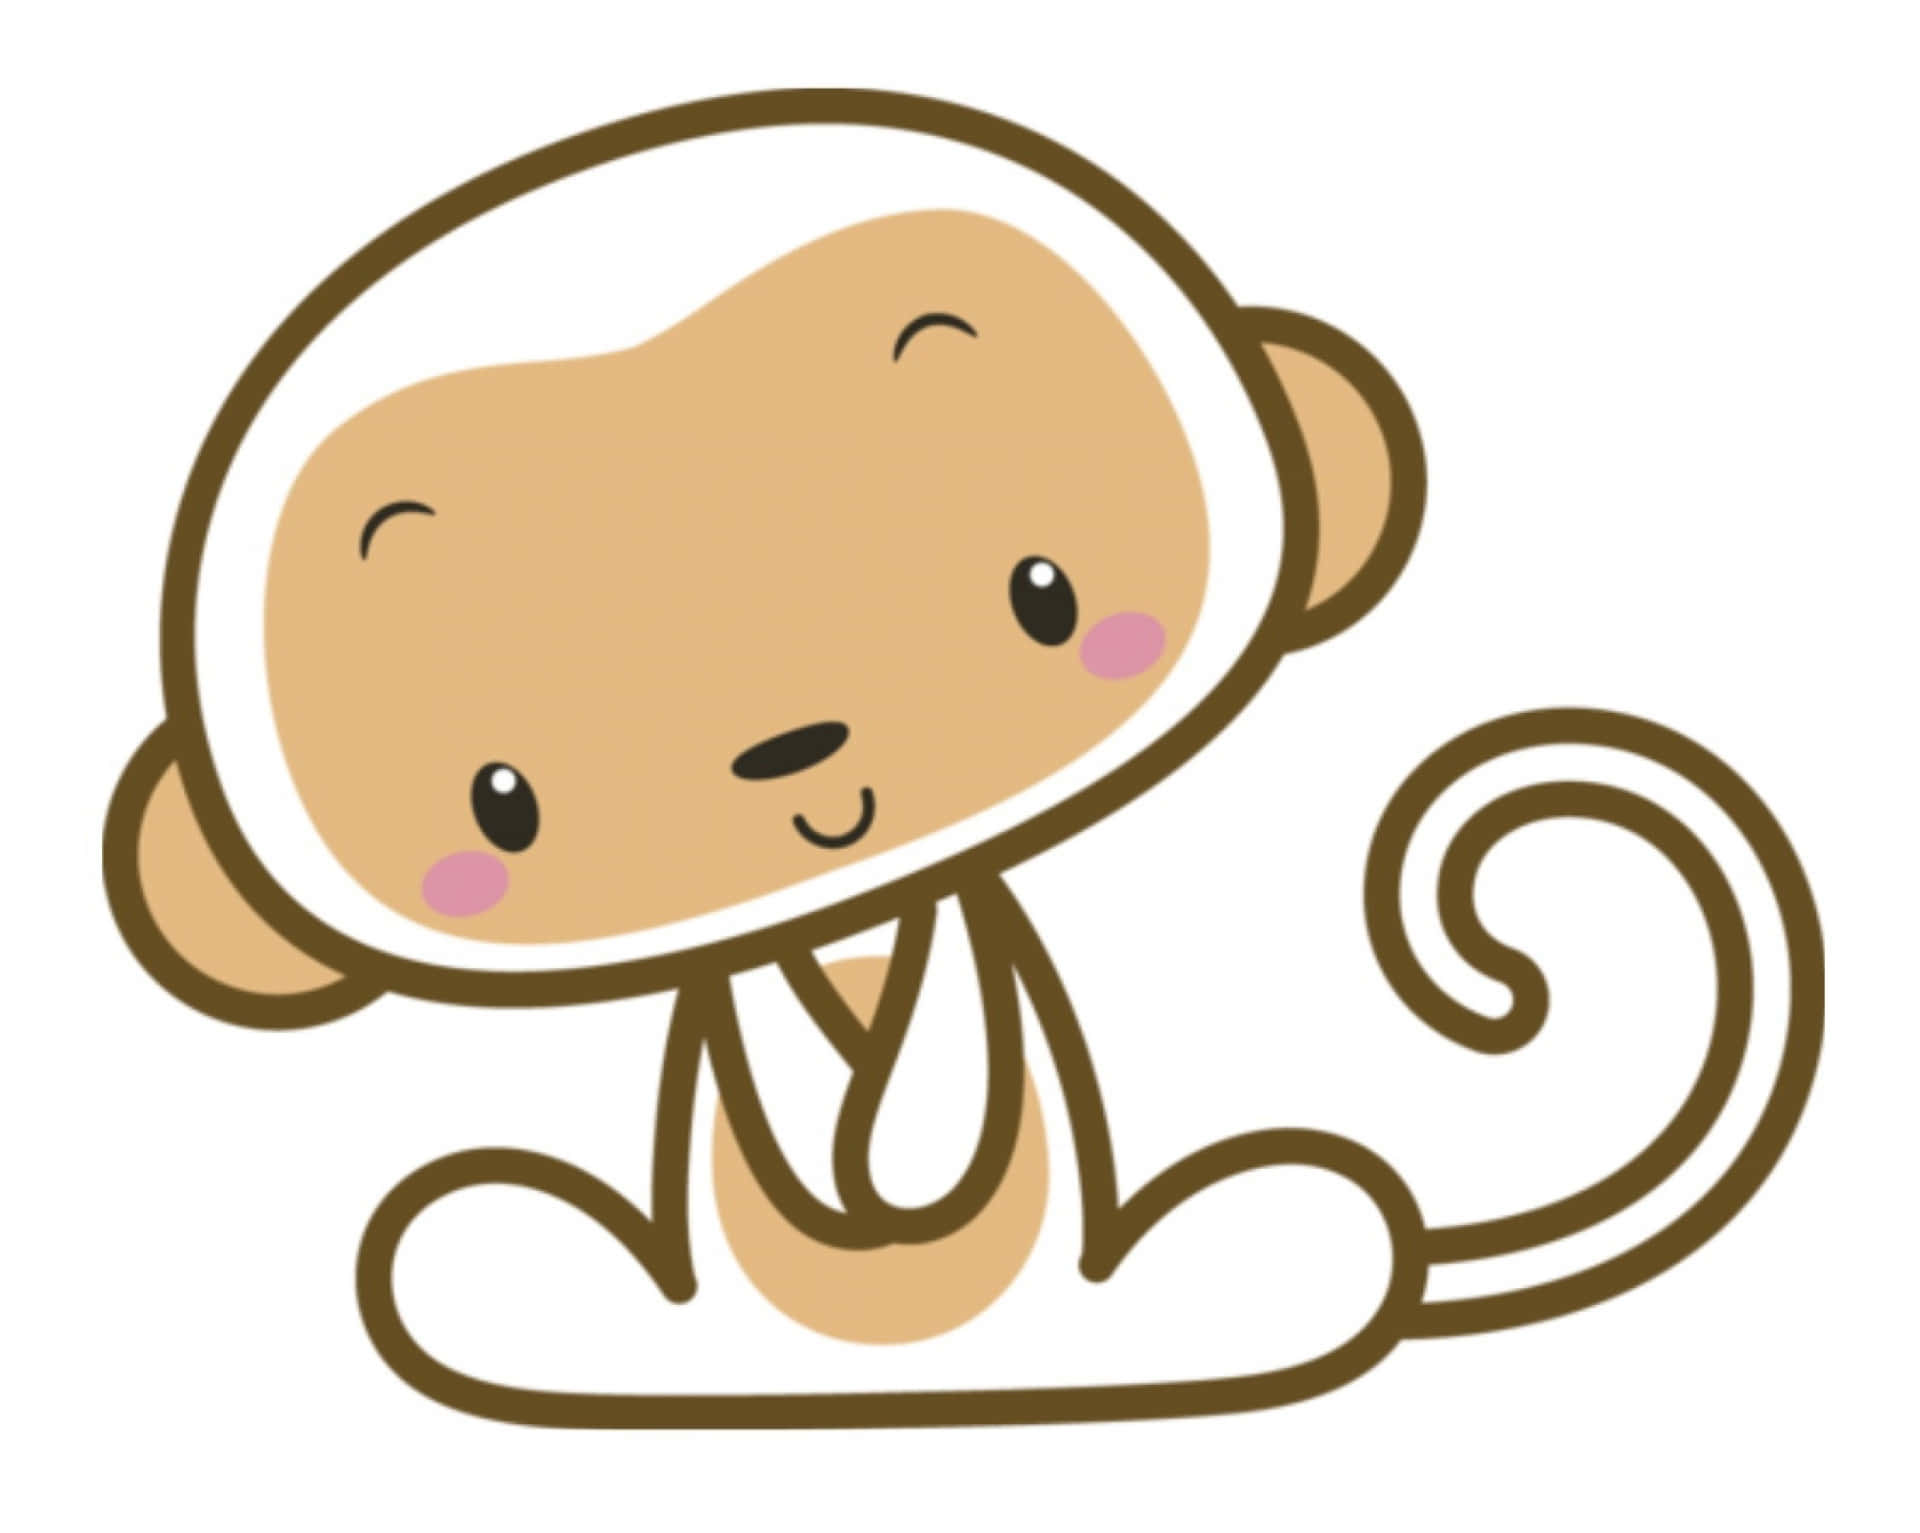 “Smiling Cartoon Monkey”